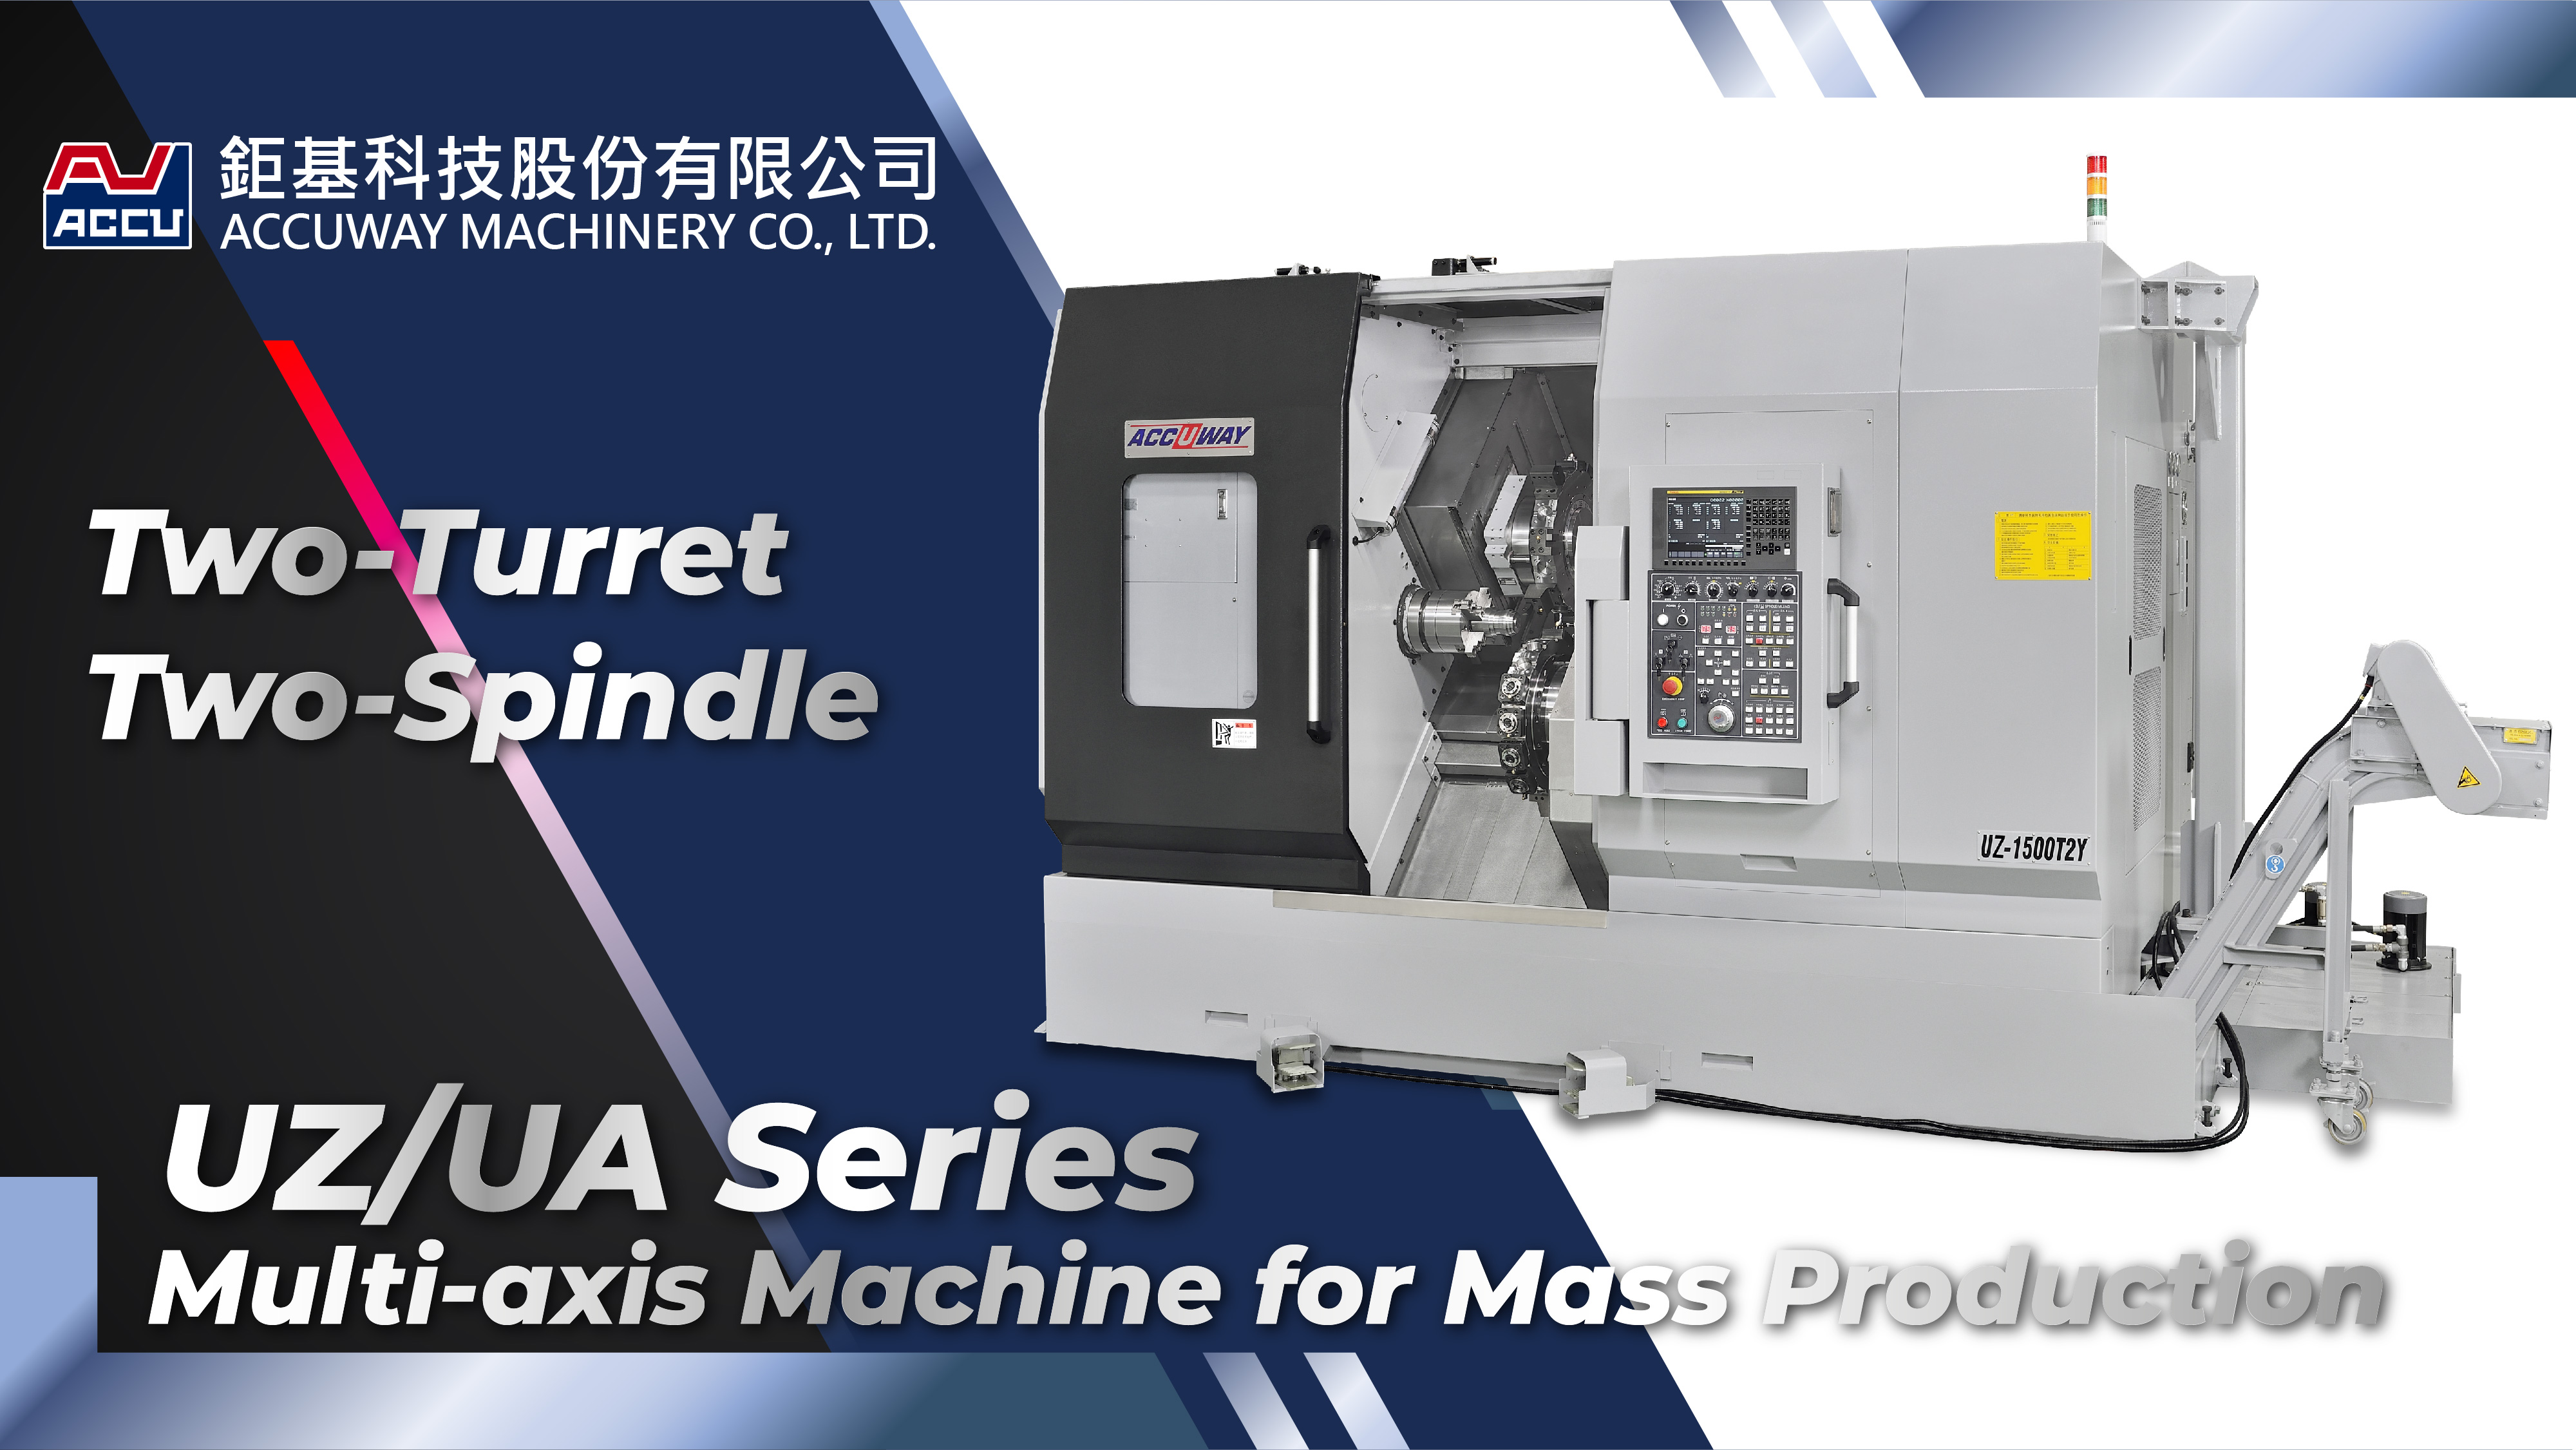 影片|Multi-axis Machine for Mass Production_UZ/UA-1500T2Y | Taiwan Cnc Machine Provider | ACCUWAY